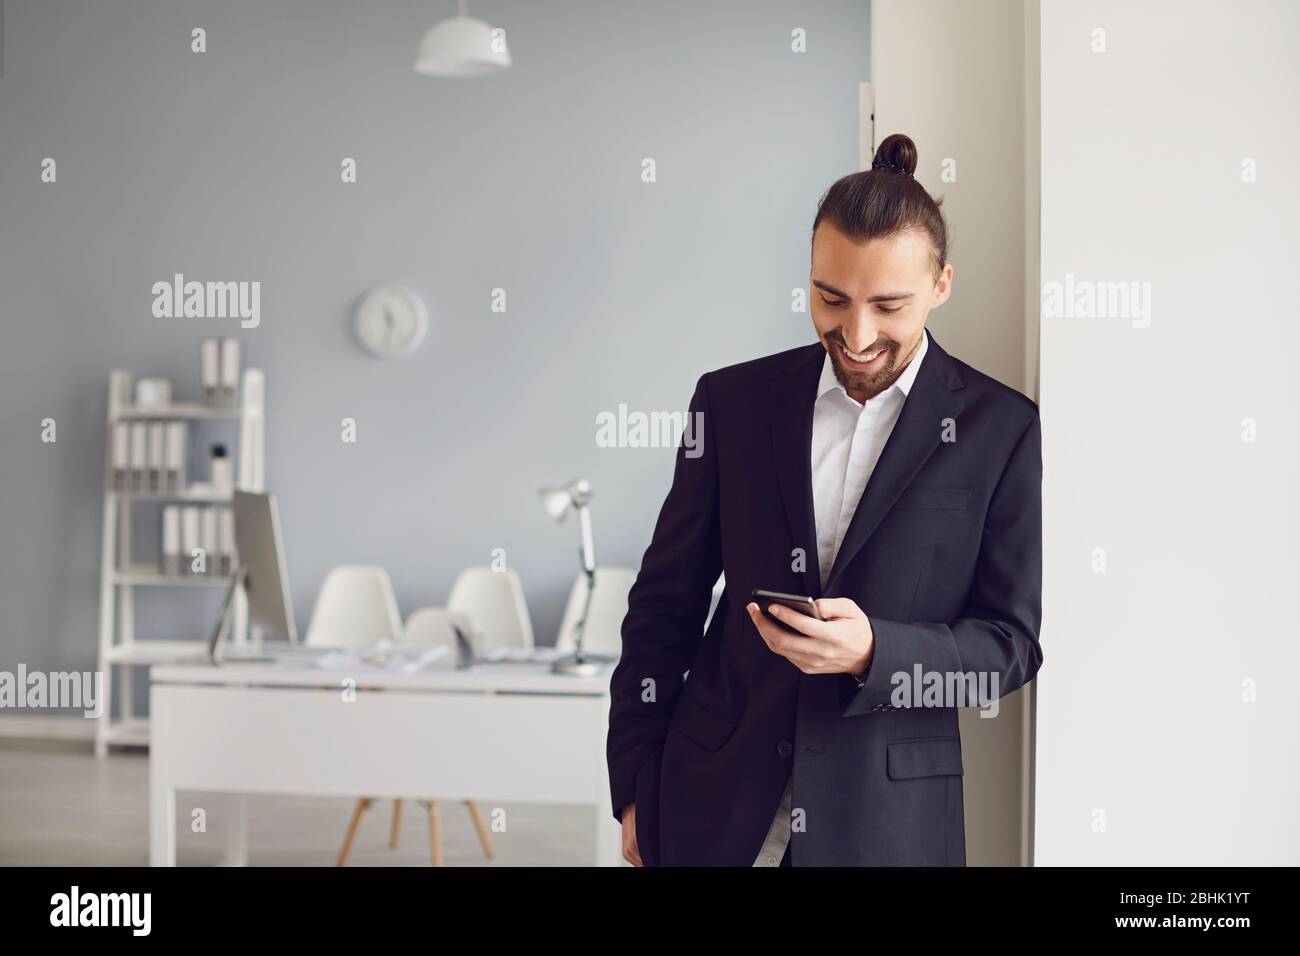 Ein Geschäftsmann in einer schwarzen Jacke liest in einem weißen Büro eine Nachricht auf einem Mobiltelefon. Stockfoto